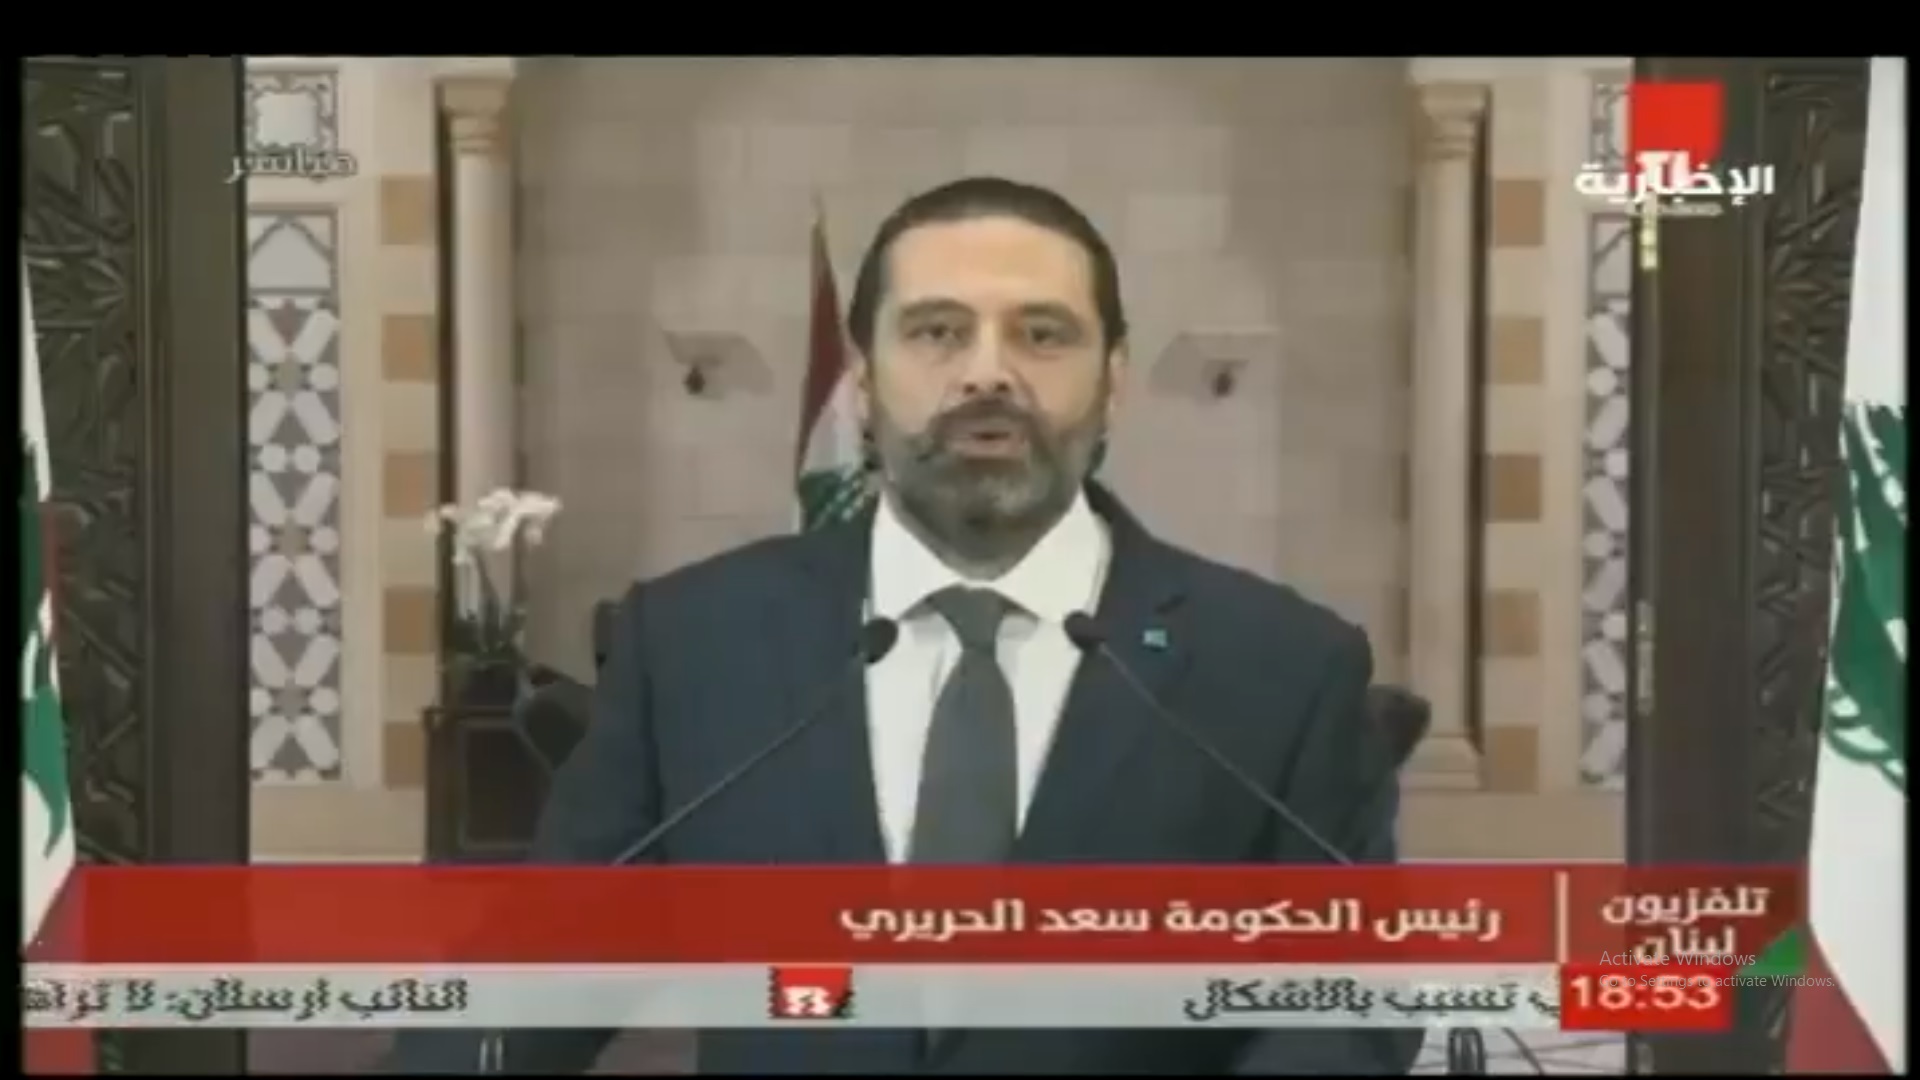 الحريري يمهل الأطراف السياسية في بلاده 72 ساعة لنيل رضا اللبنانيين - المواطن